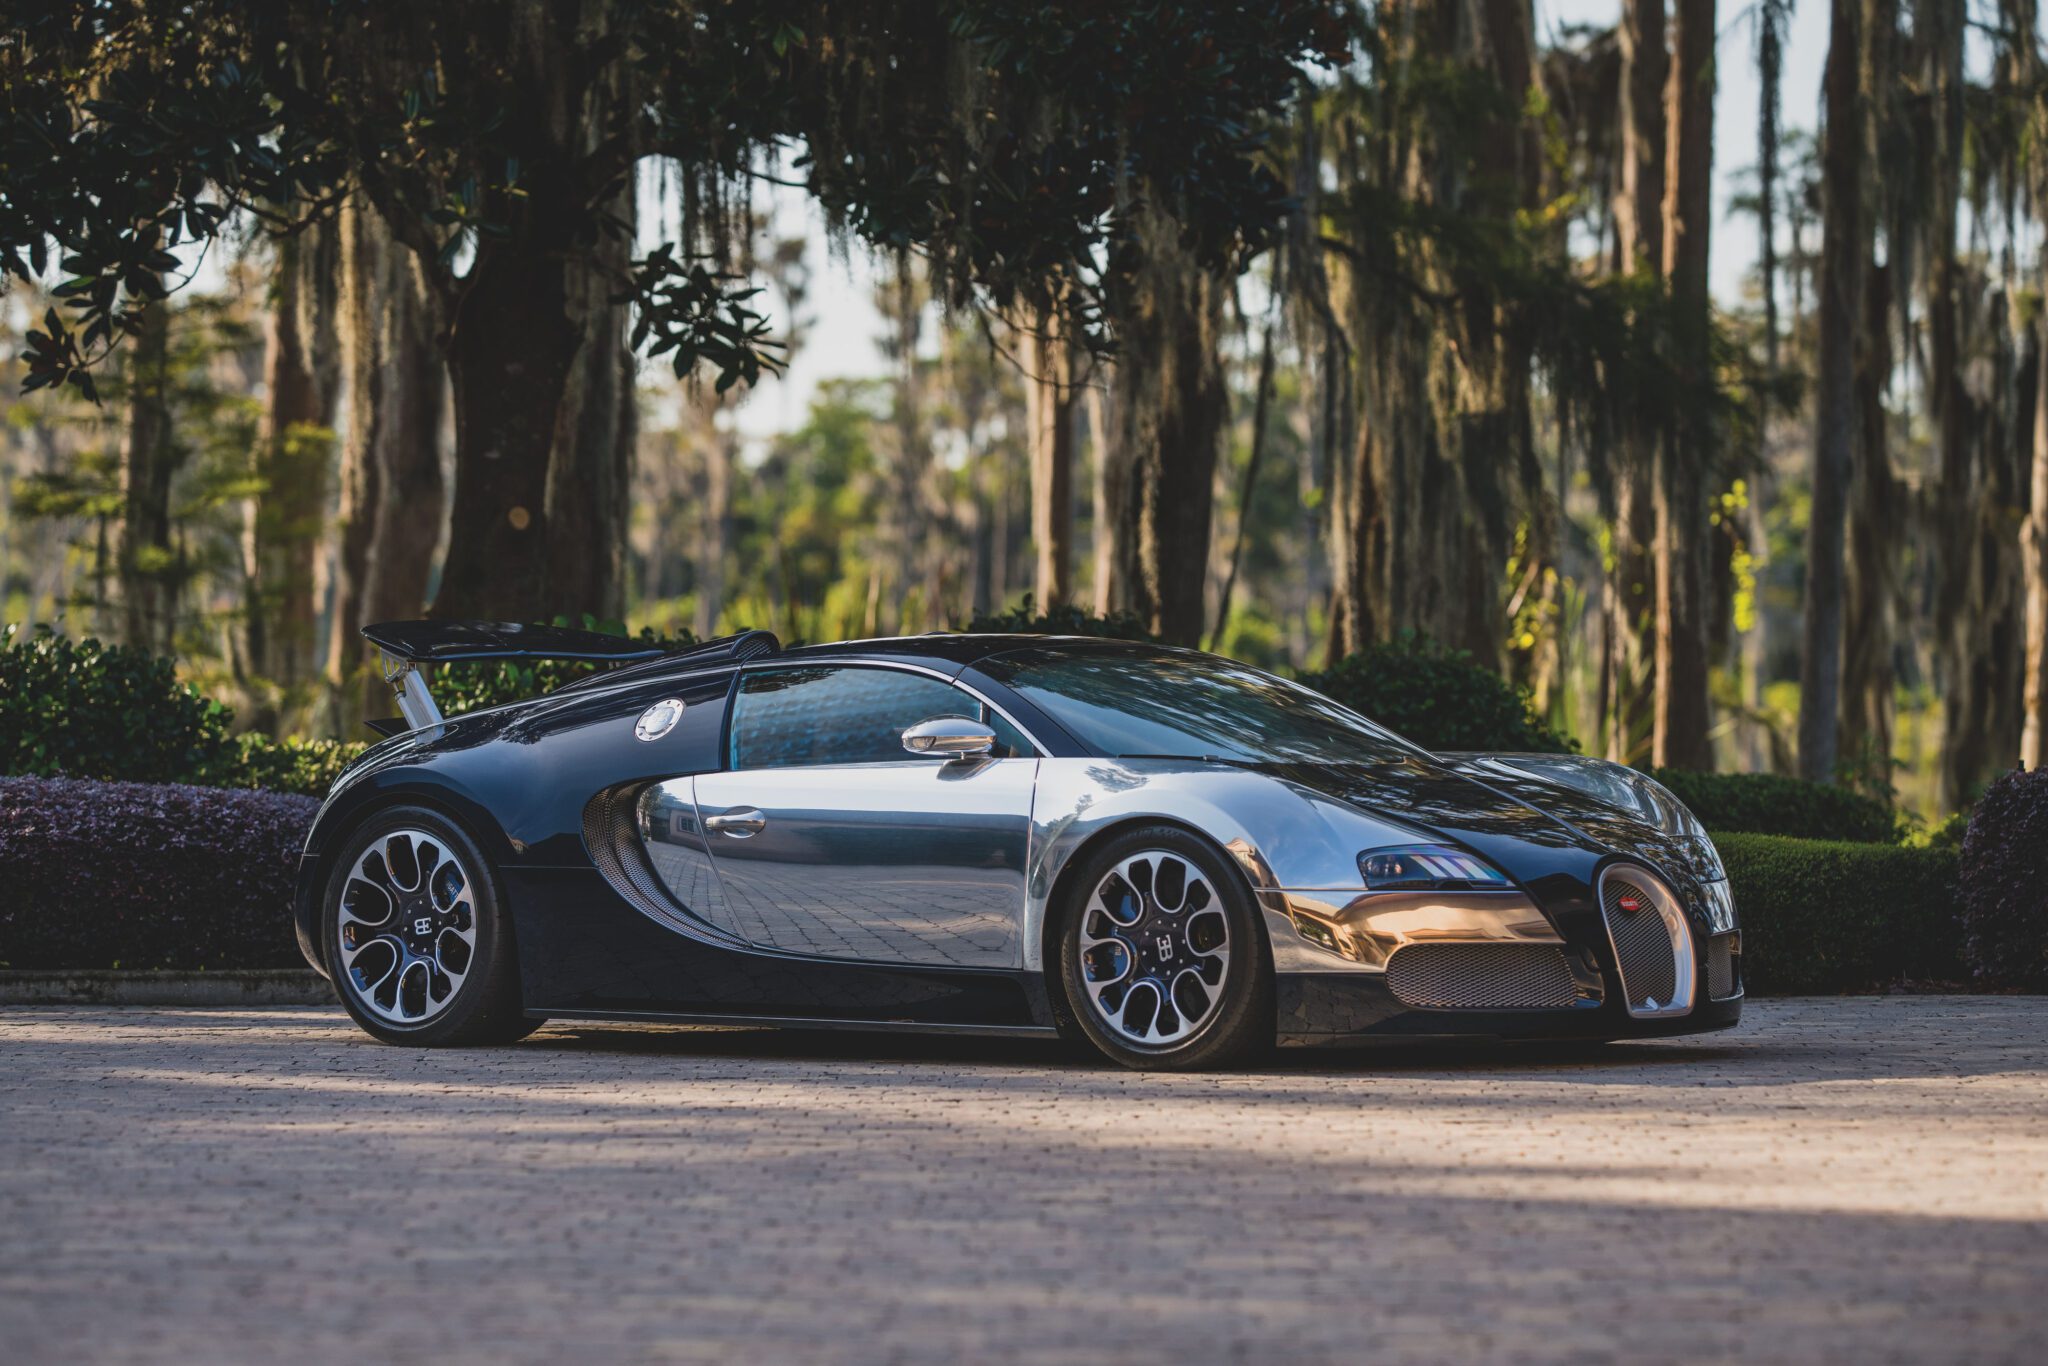 2010 Bugatti Veyron 16 4 Grand Sport Sang Bleu 1436102